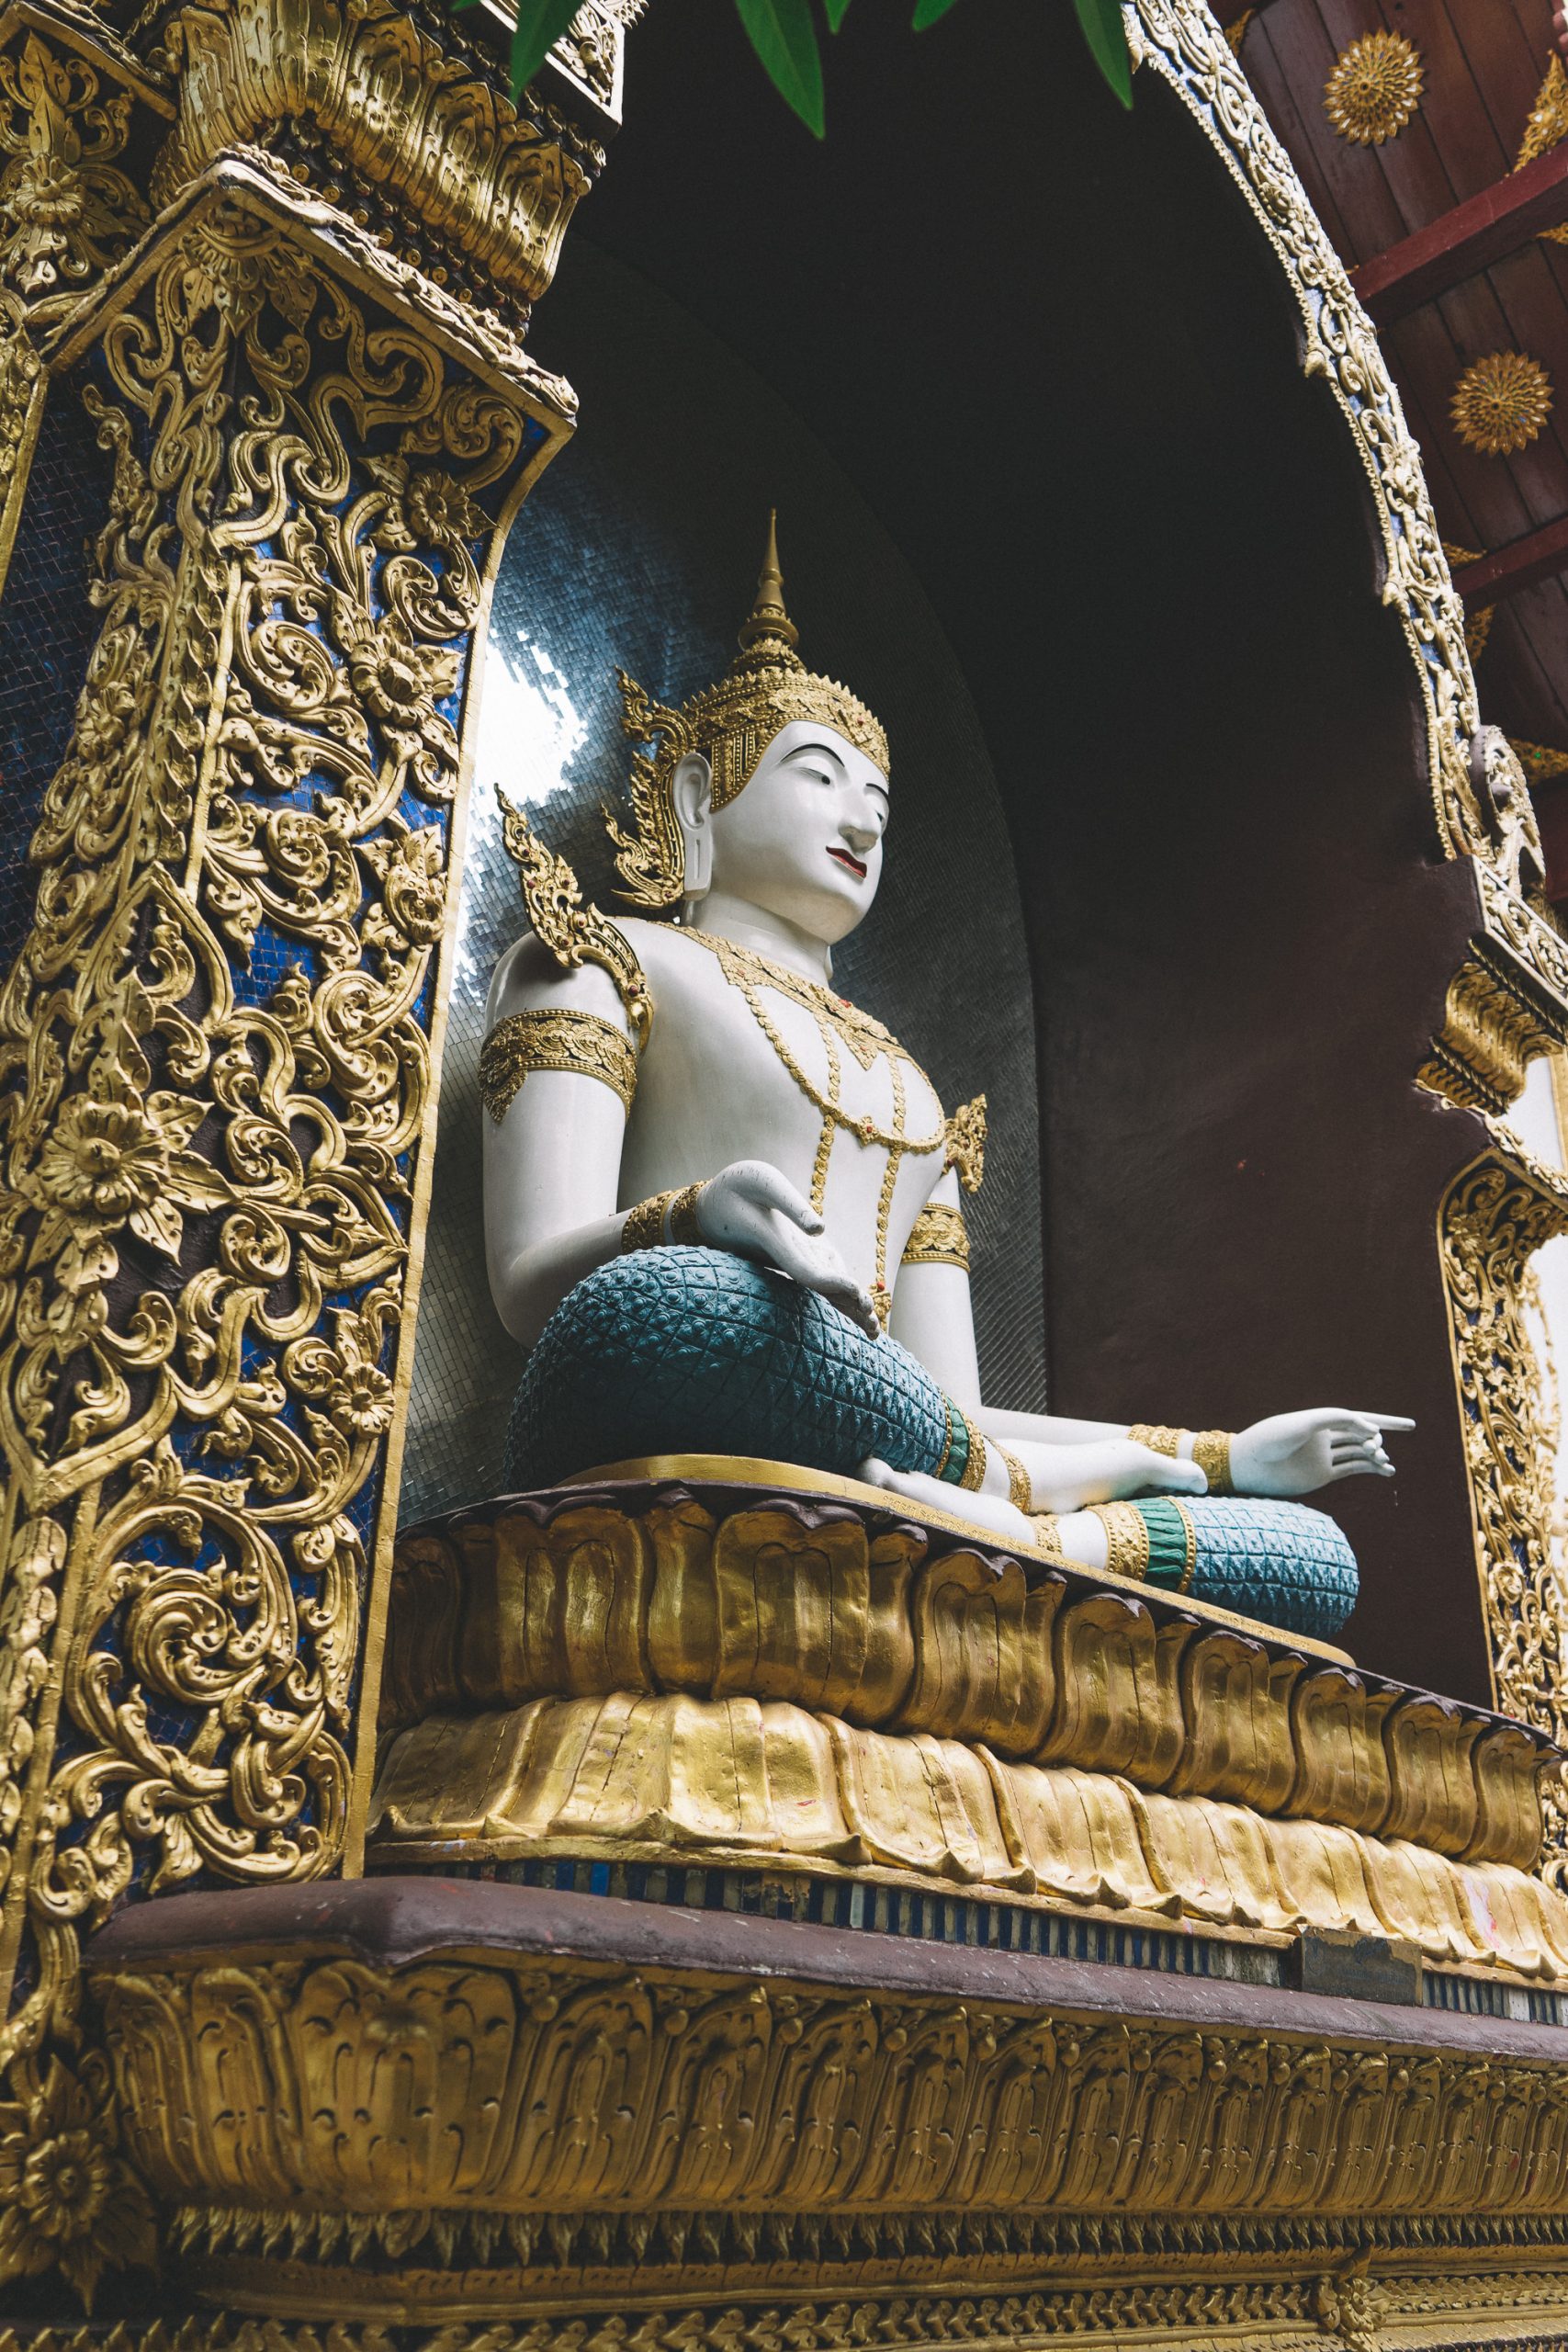 Wat Saen Muang Ma Luang (Wat Hua Khuang)